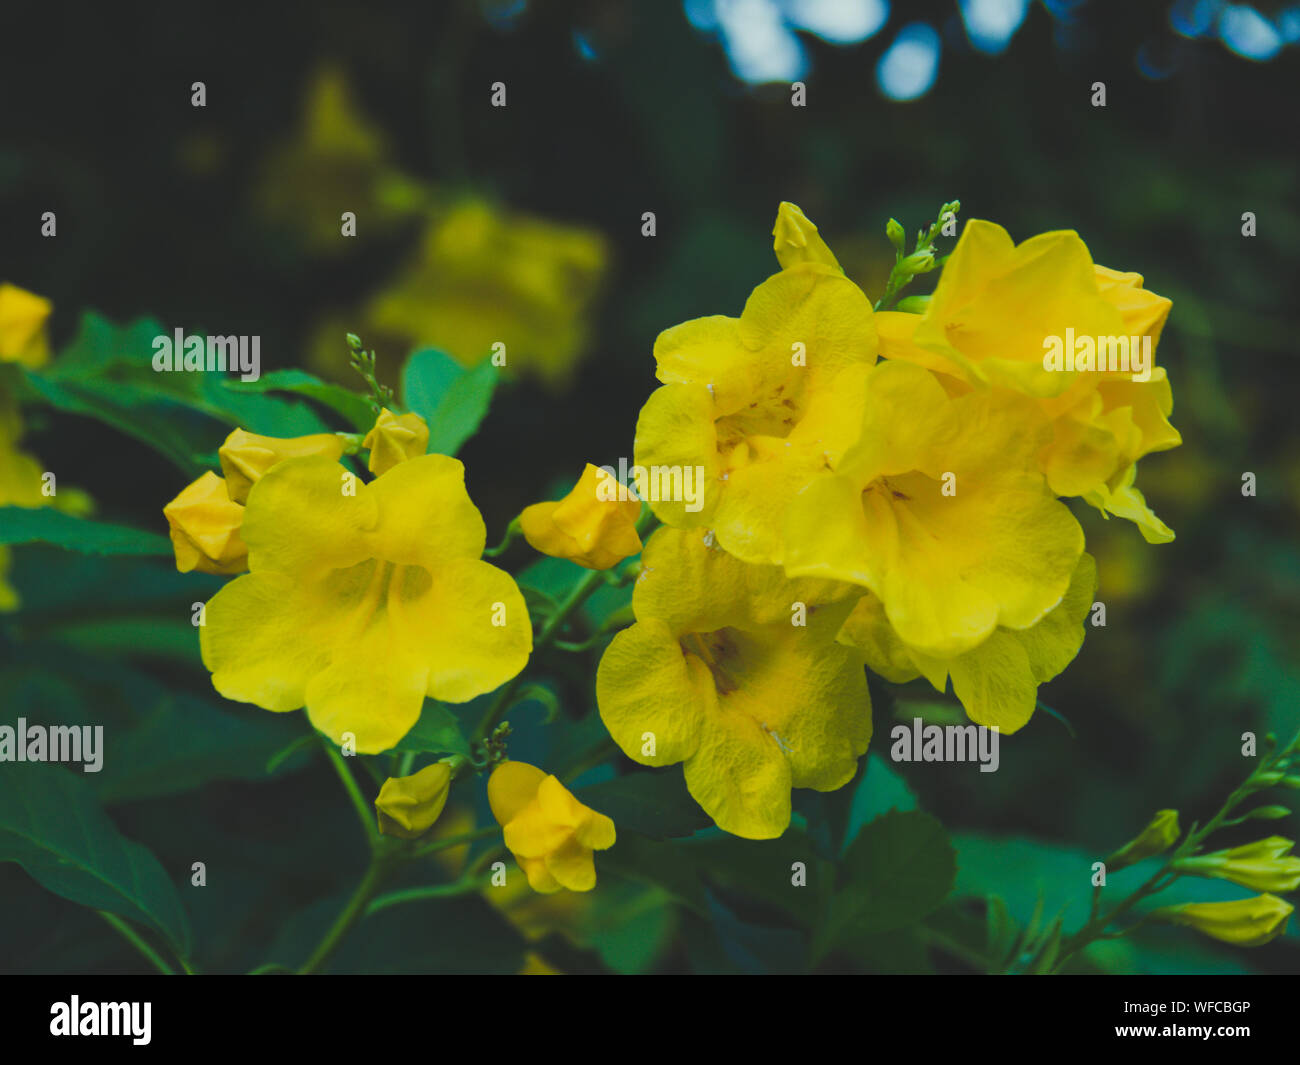 Tecoma stans Baum im Garten, Blüten gelb Trumpetbush, Common Name gelbe Glocke/Gelb Elder / Trompete Weinstock. Stockfoto